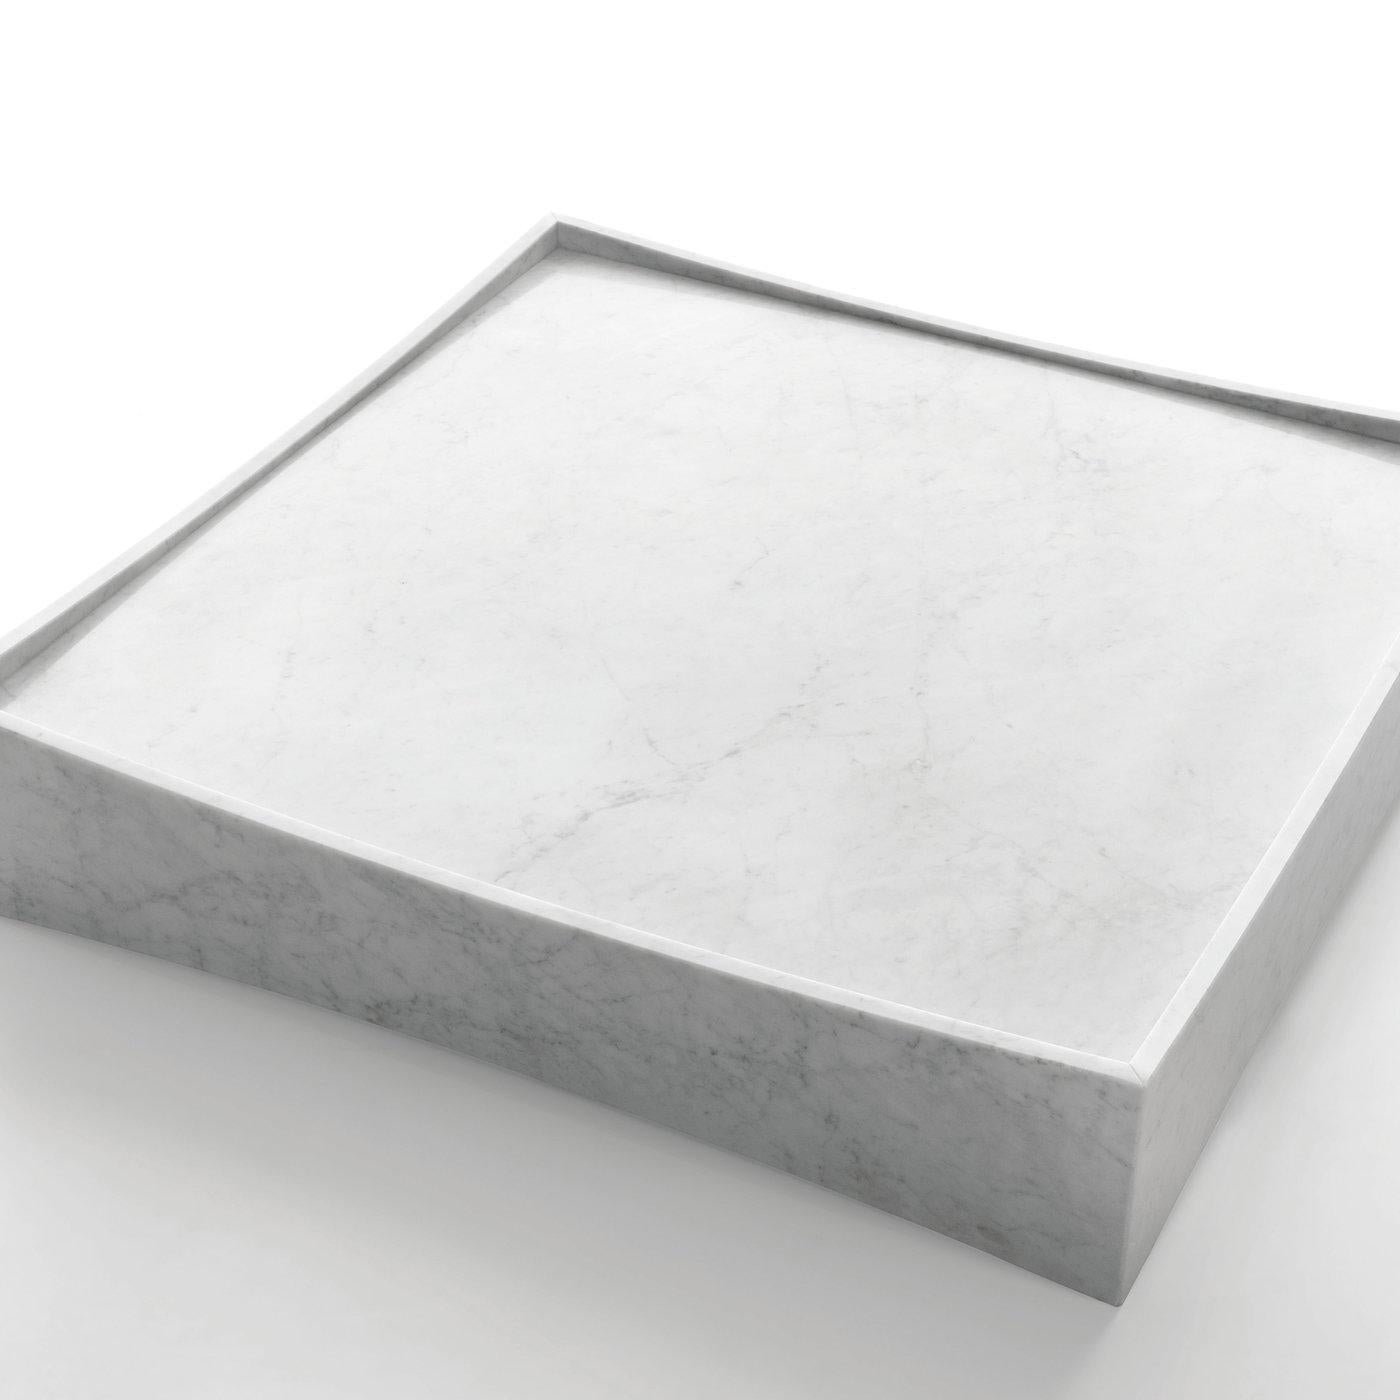 Italian White Gallery Low Table, Design Claesson Koivisto Rune, 2011